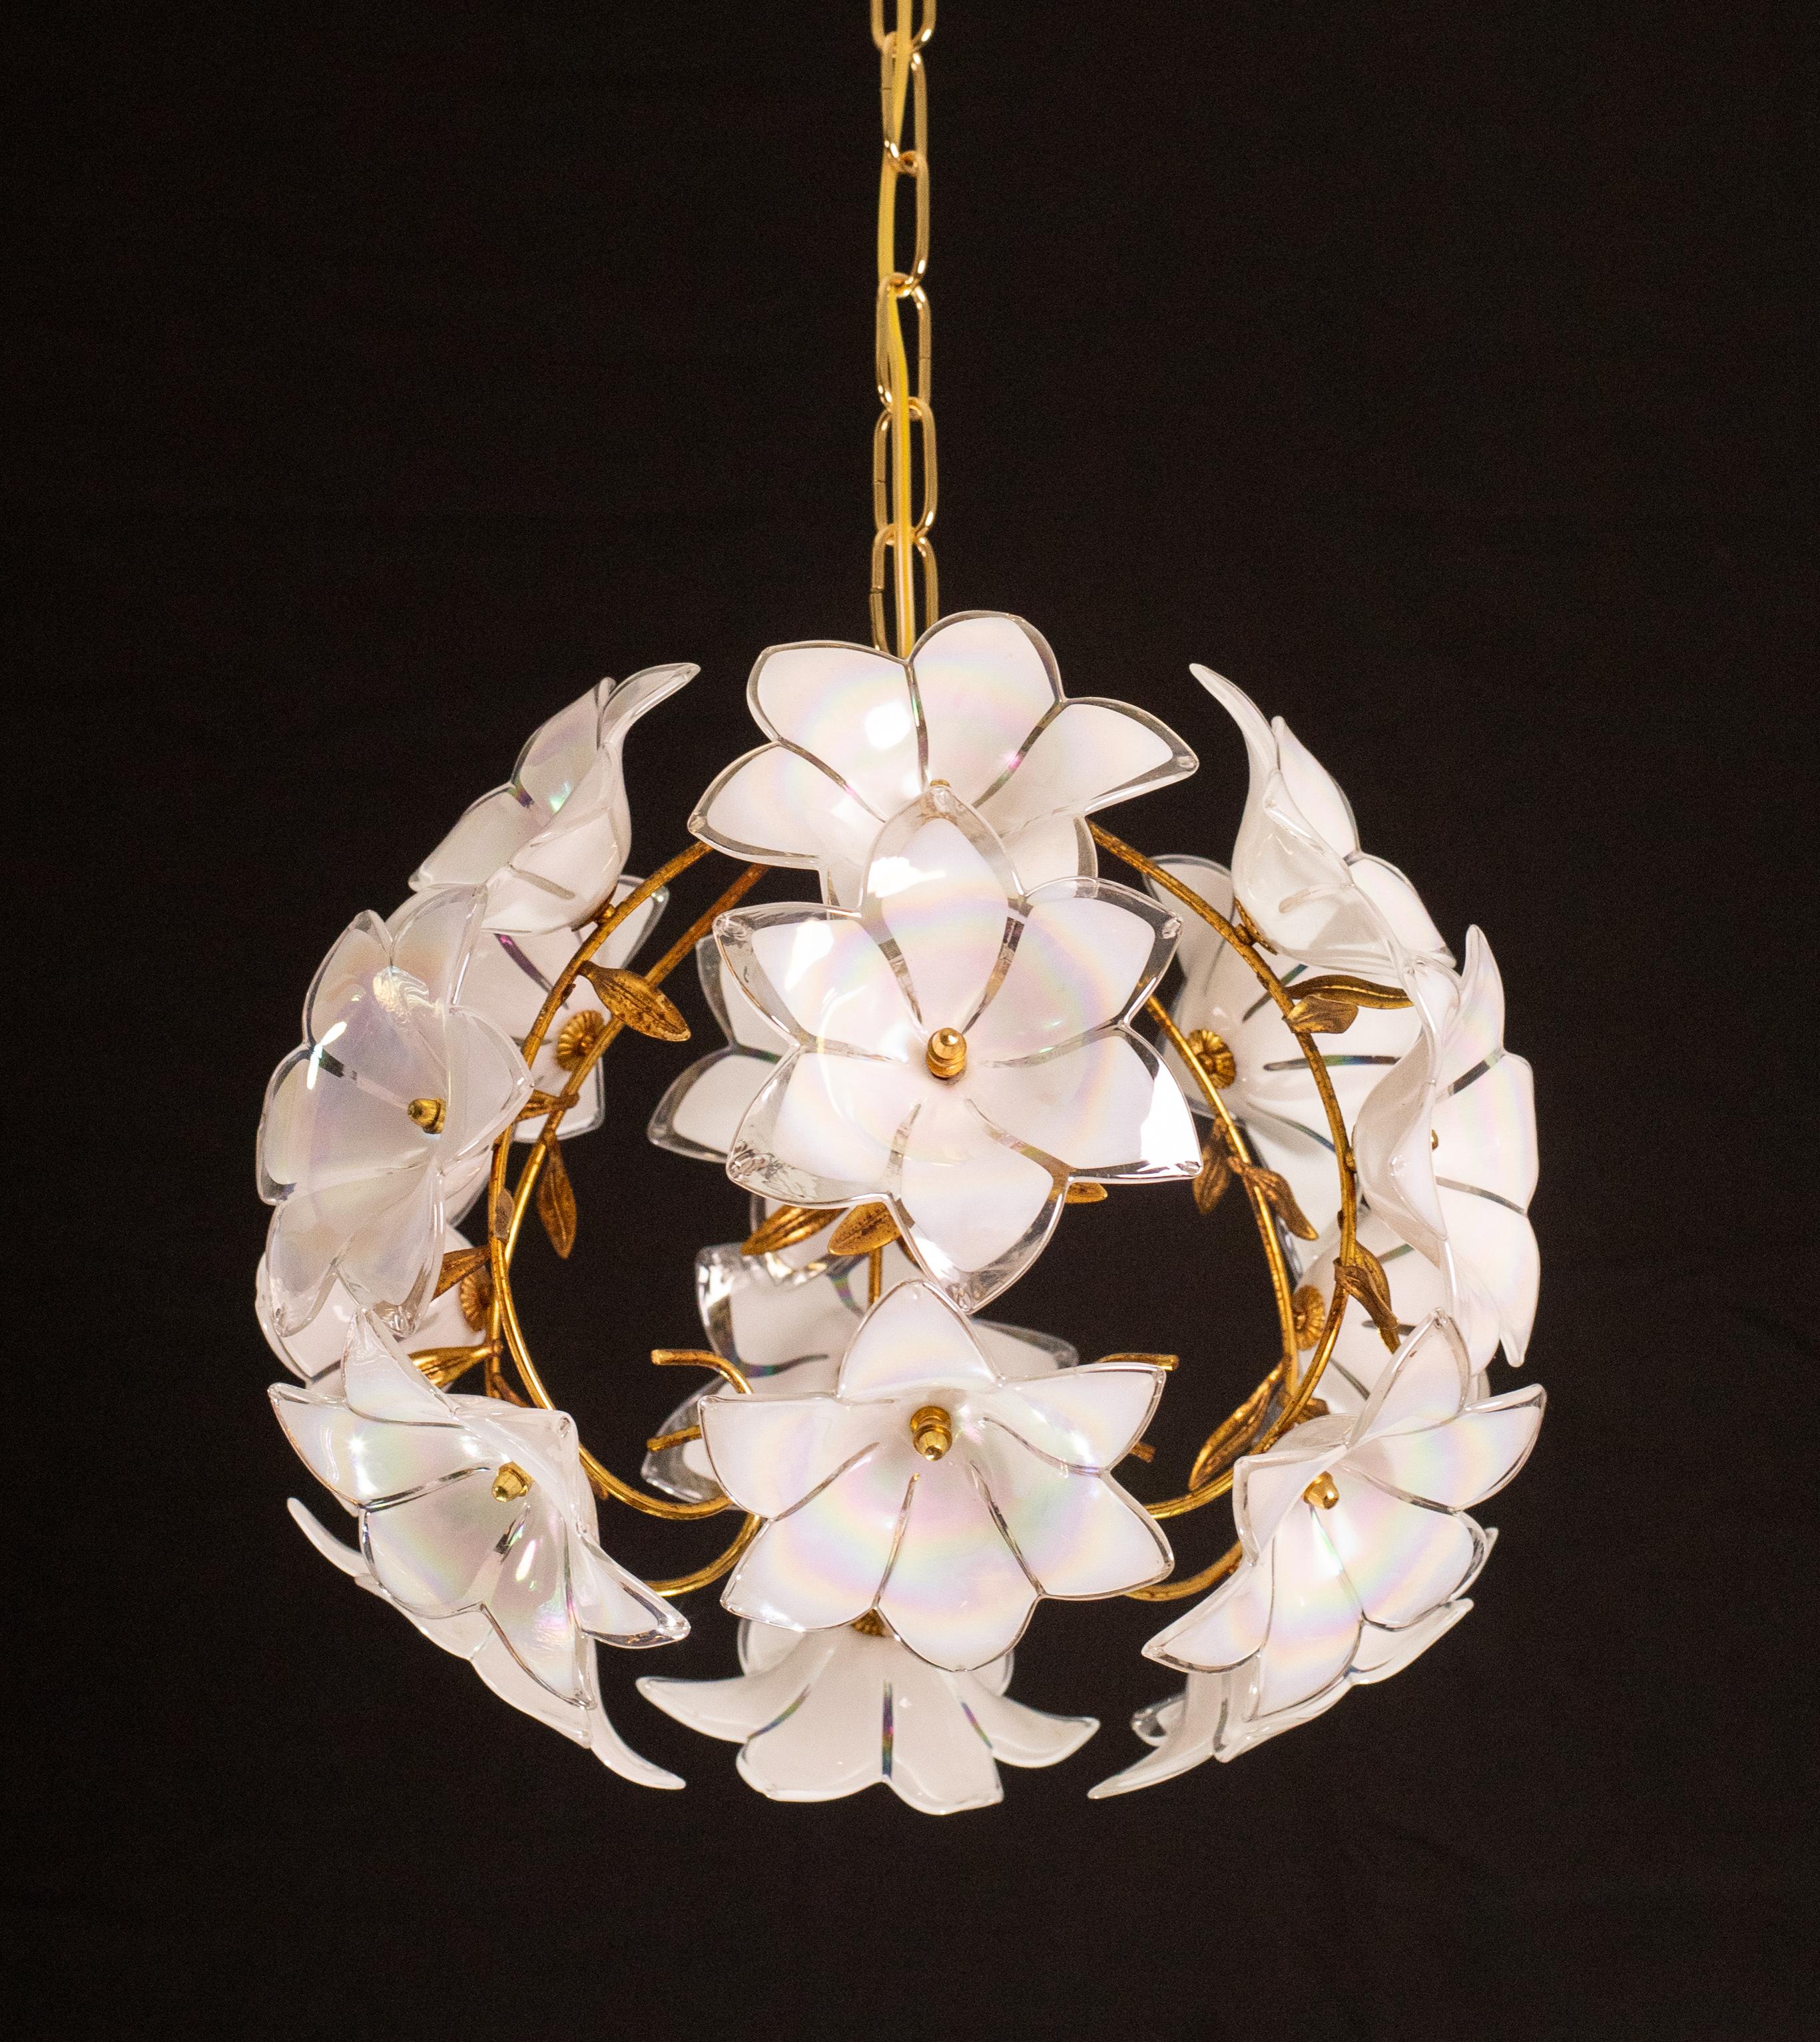 Ein Paar Vintage-Kronleuchter aus Murano-Glas mit weißen Blumen.
Die Strukturen sind etwas abgenutzt, aber mit den montierten Blumen ist das nicht allzu sichtbar.
Der Kronleuchter hat 1 Lichtpunkte mit E14-Fassung, Möglichkeit der Verkabelung für